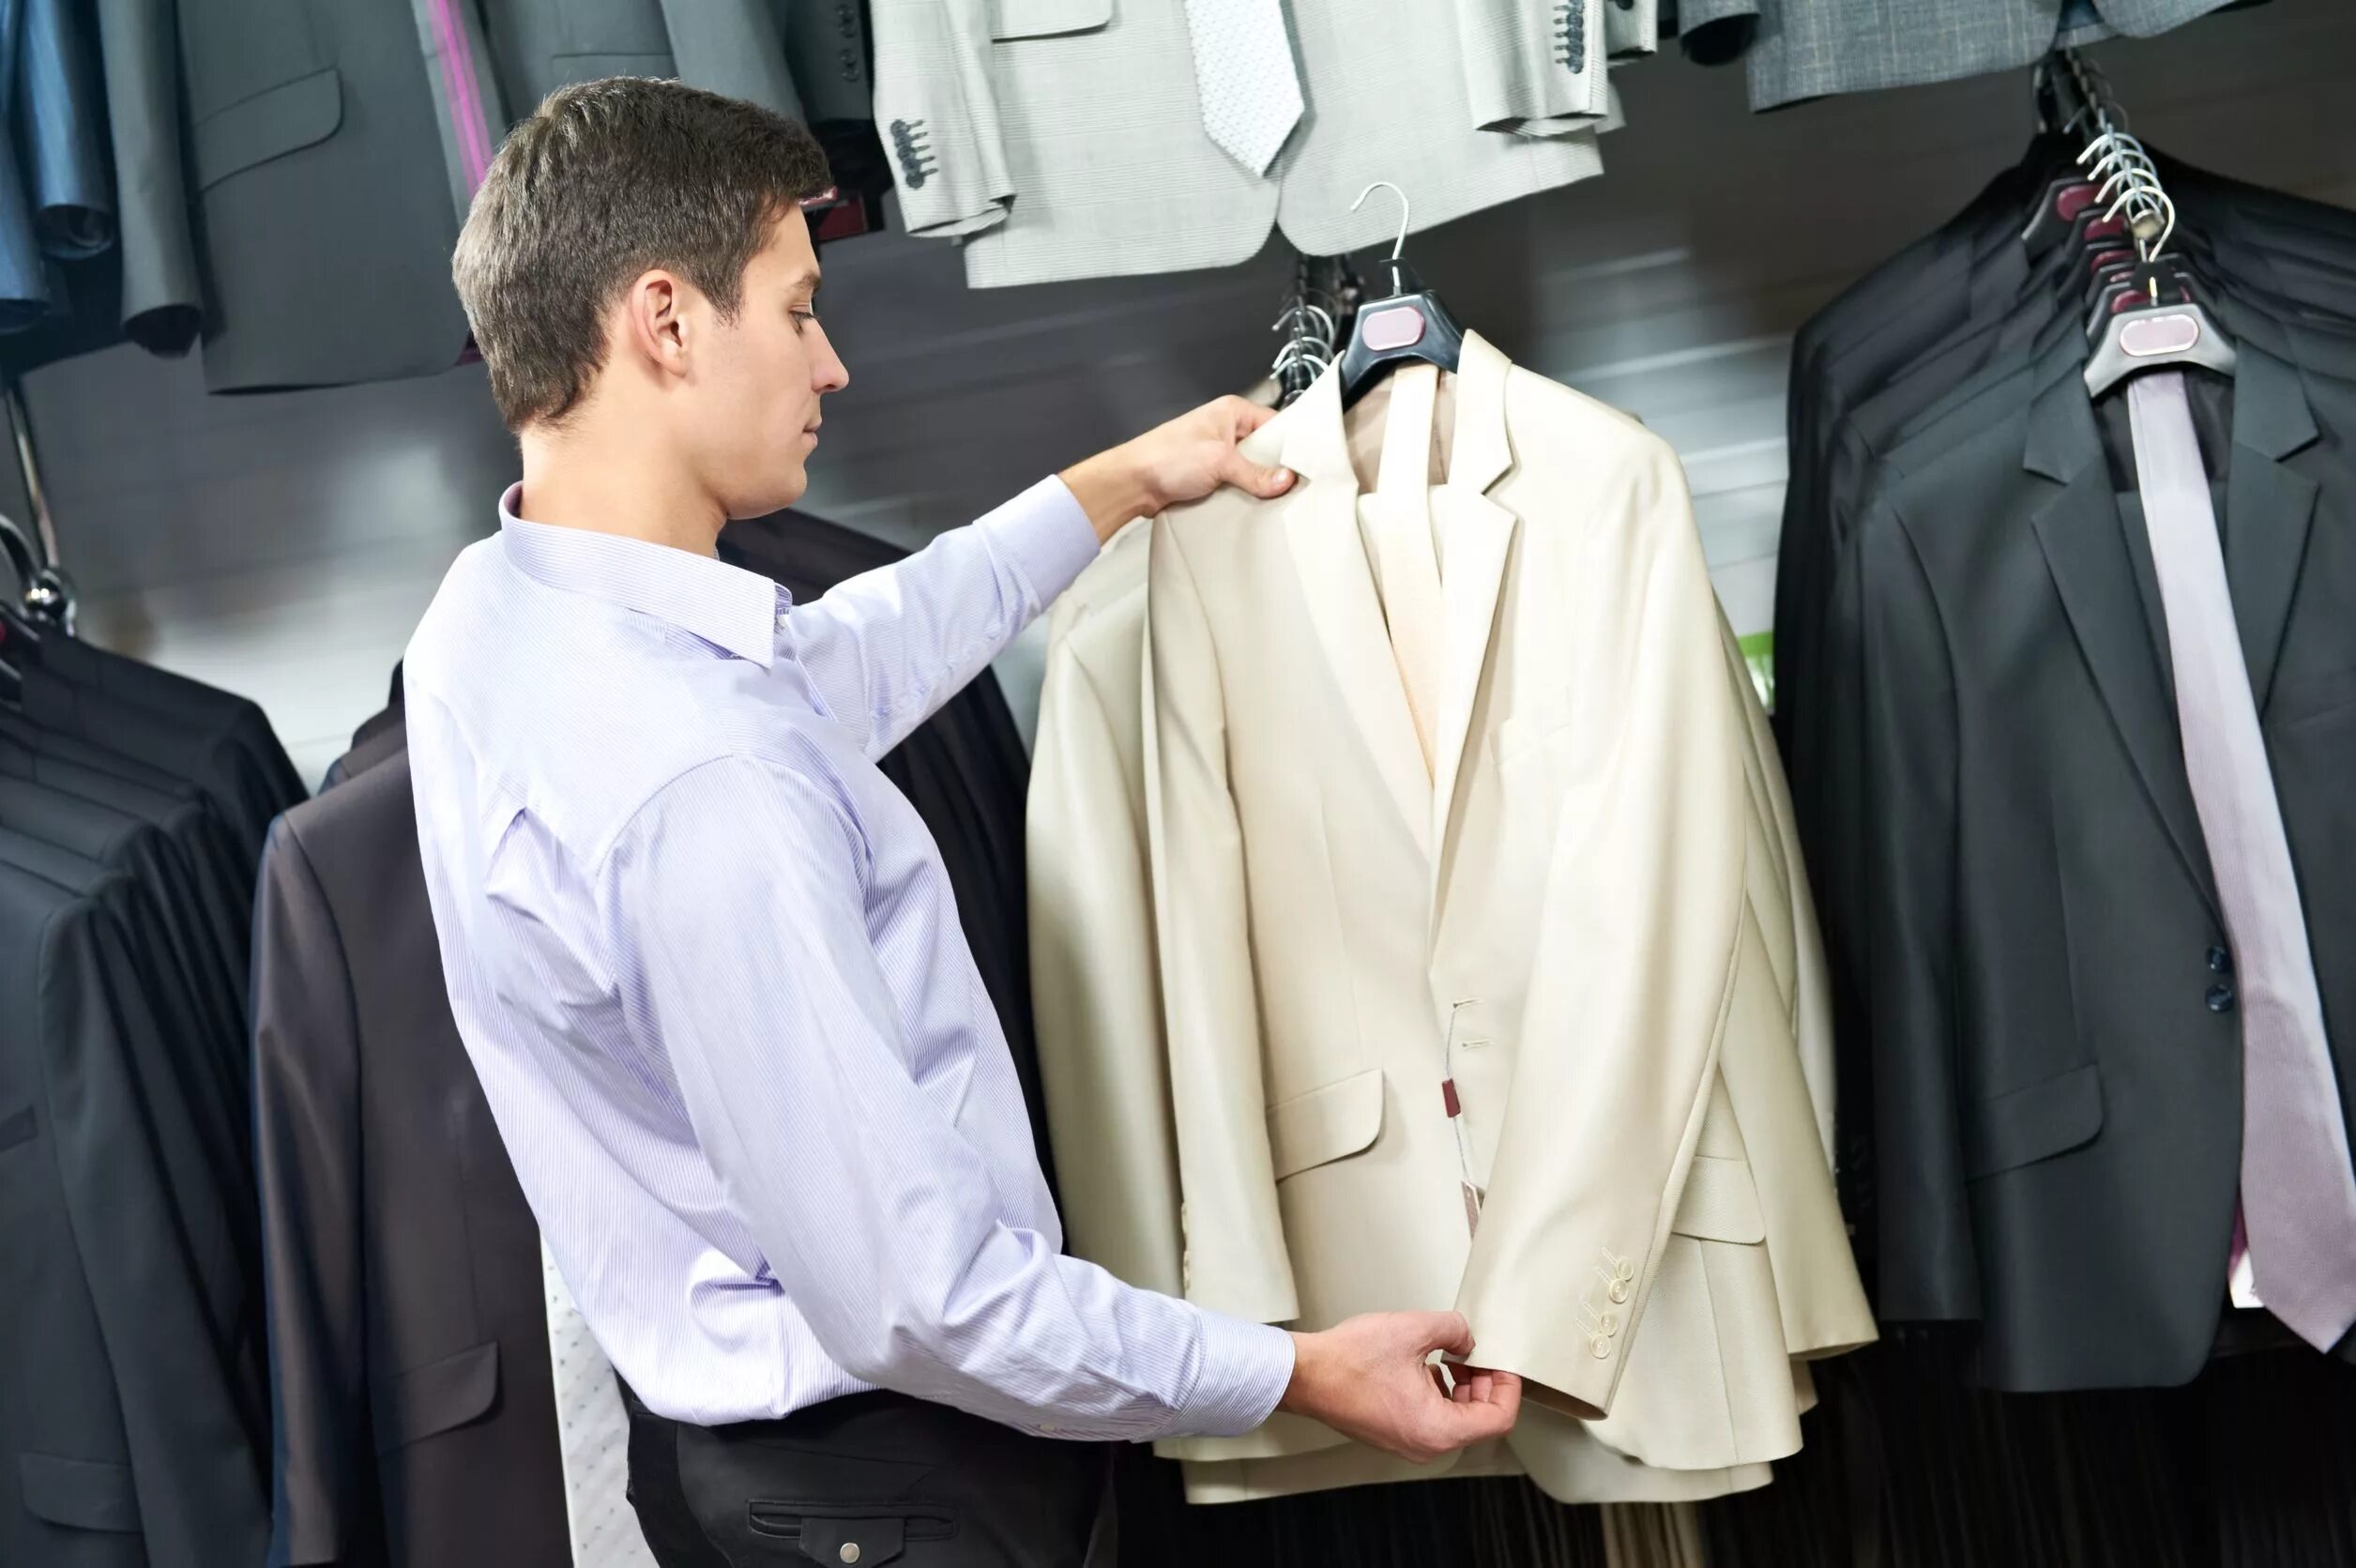 Вещи выбирают хозяина. Примерка одежды. Мужчина примеряет костюм. Примерка одежды в магазине. Бутик мужских костюмов.